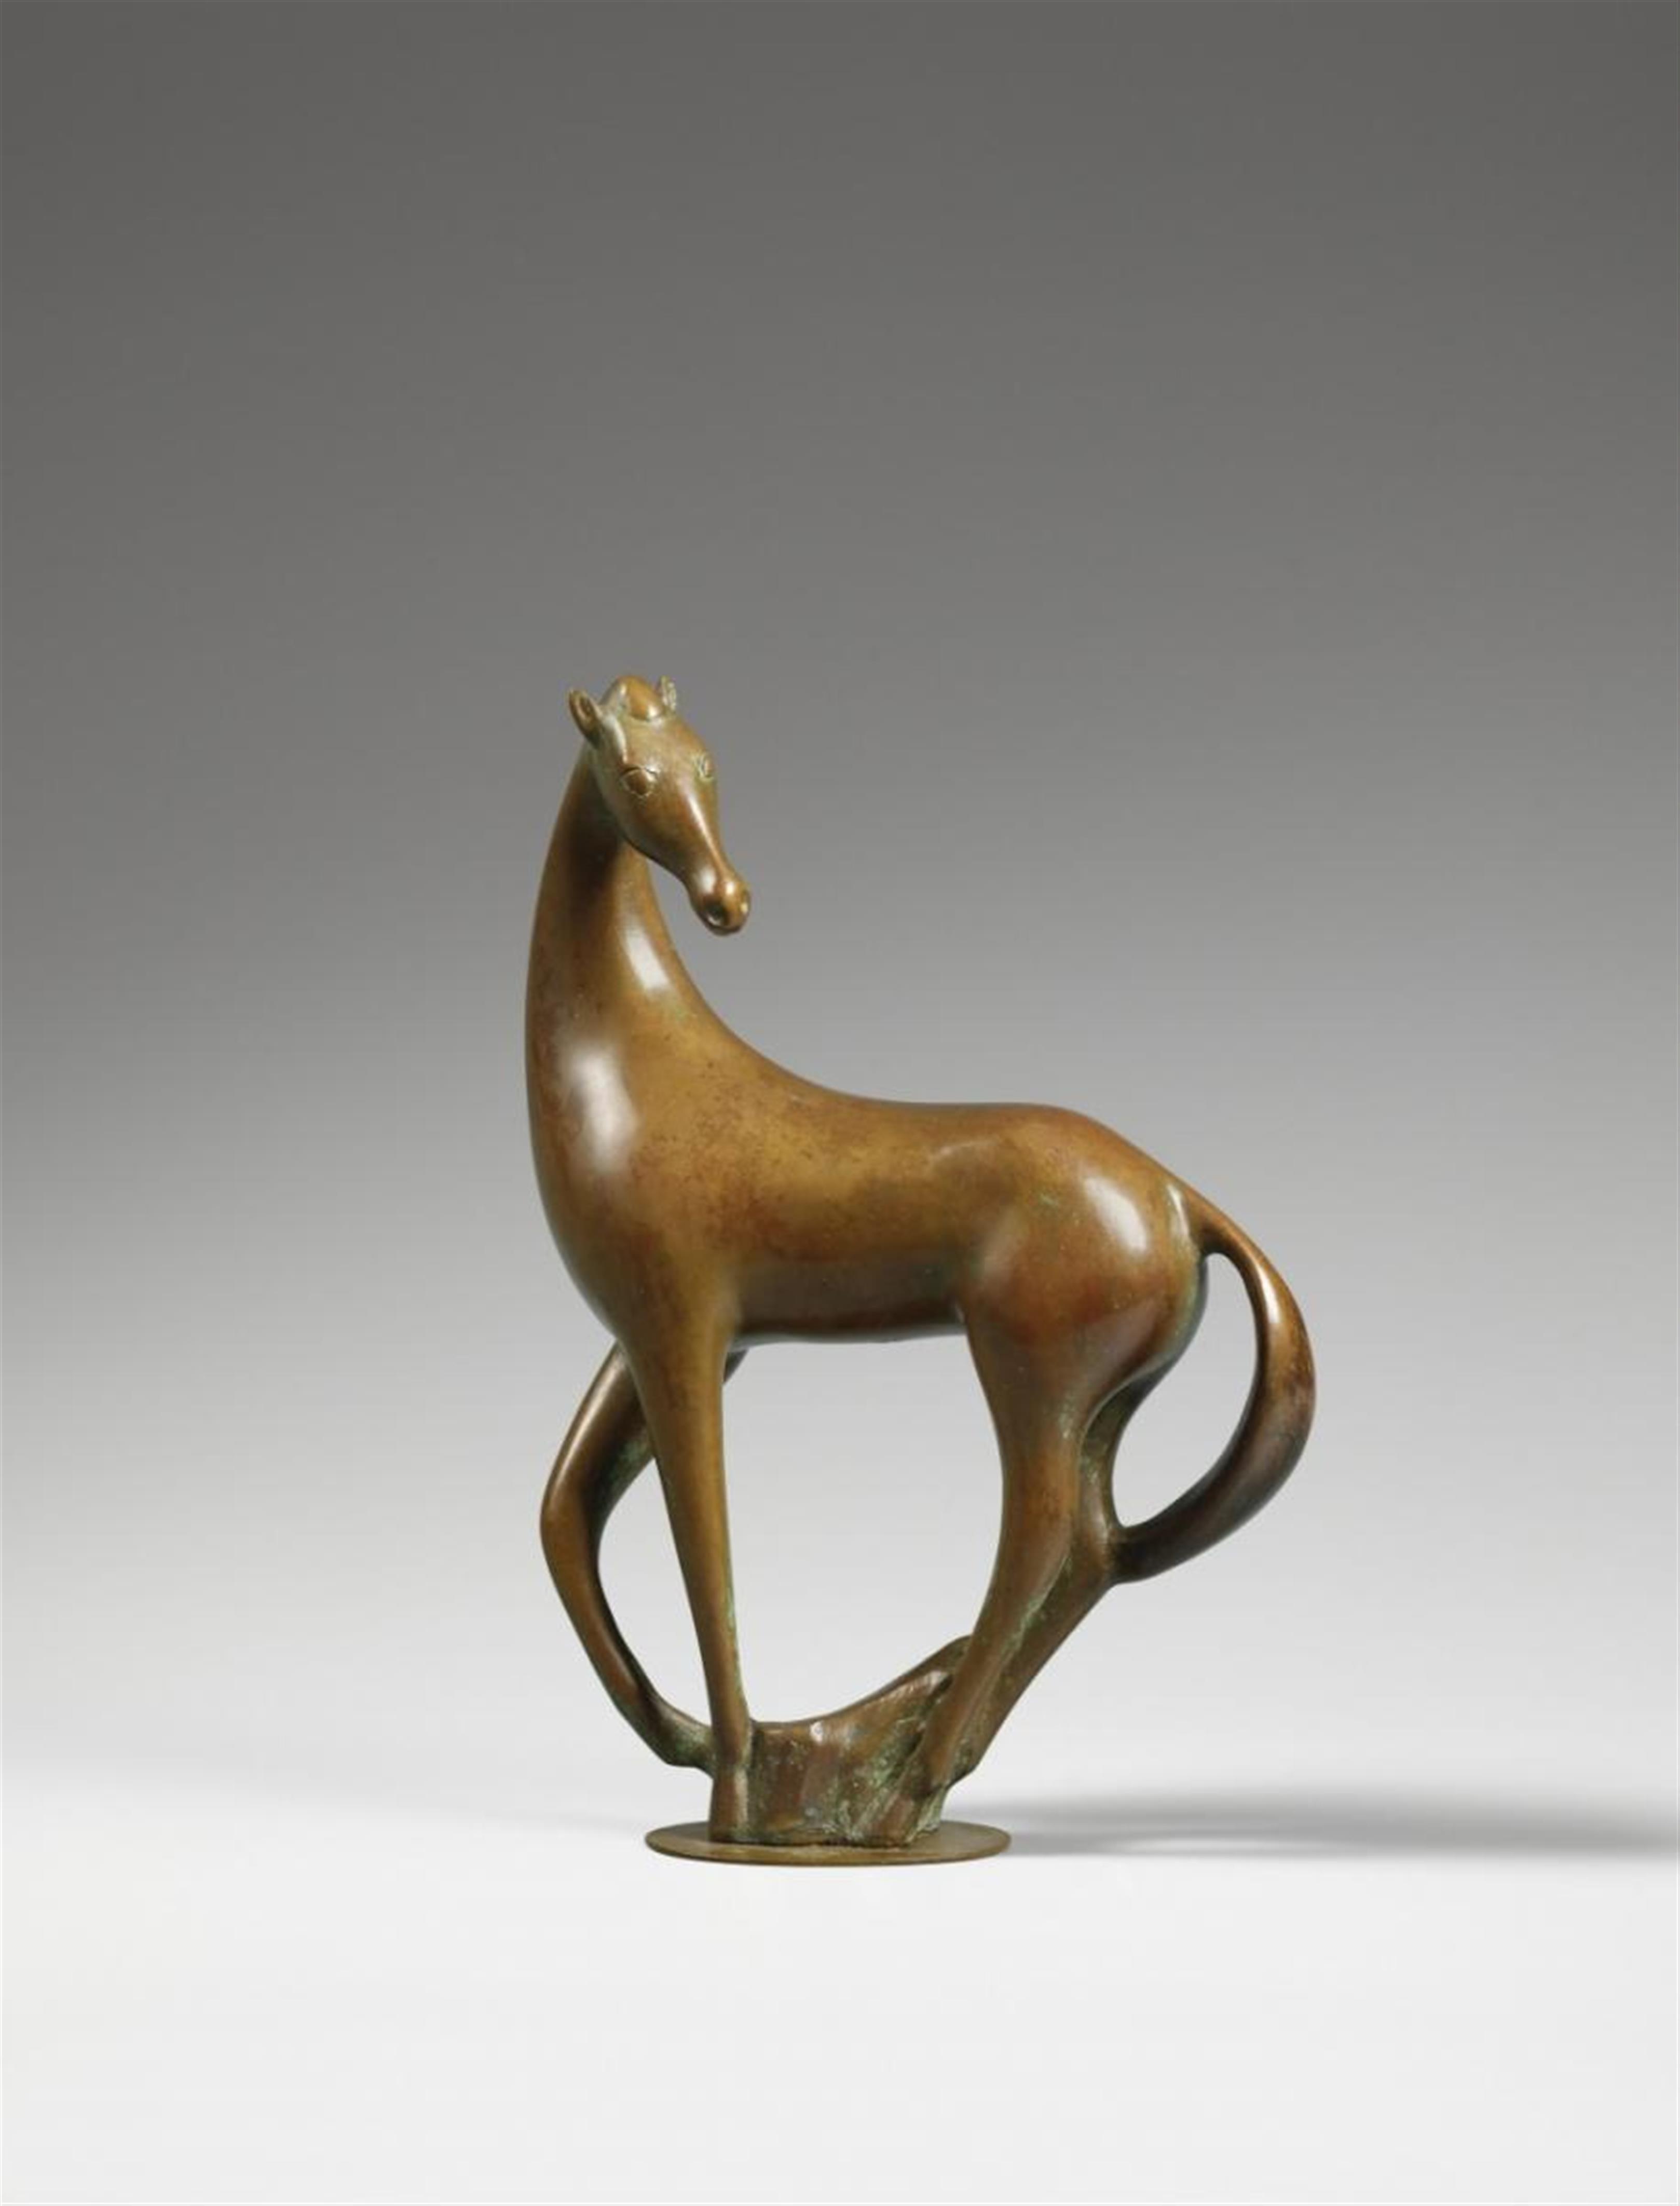 Ewald Mataré - Tänzelndes Pferd: Chinesisches Pferd (Prancing horse: Chinese horse) - image-1